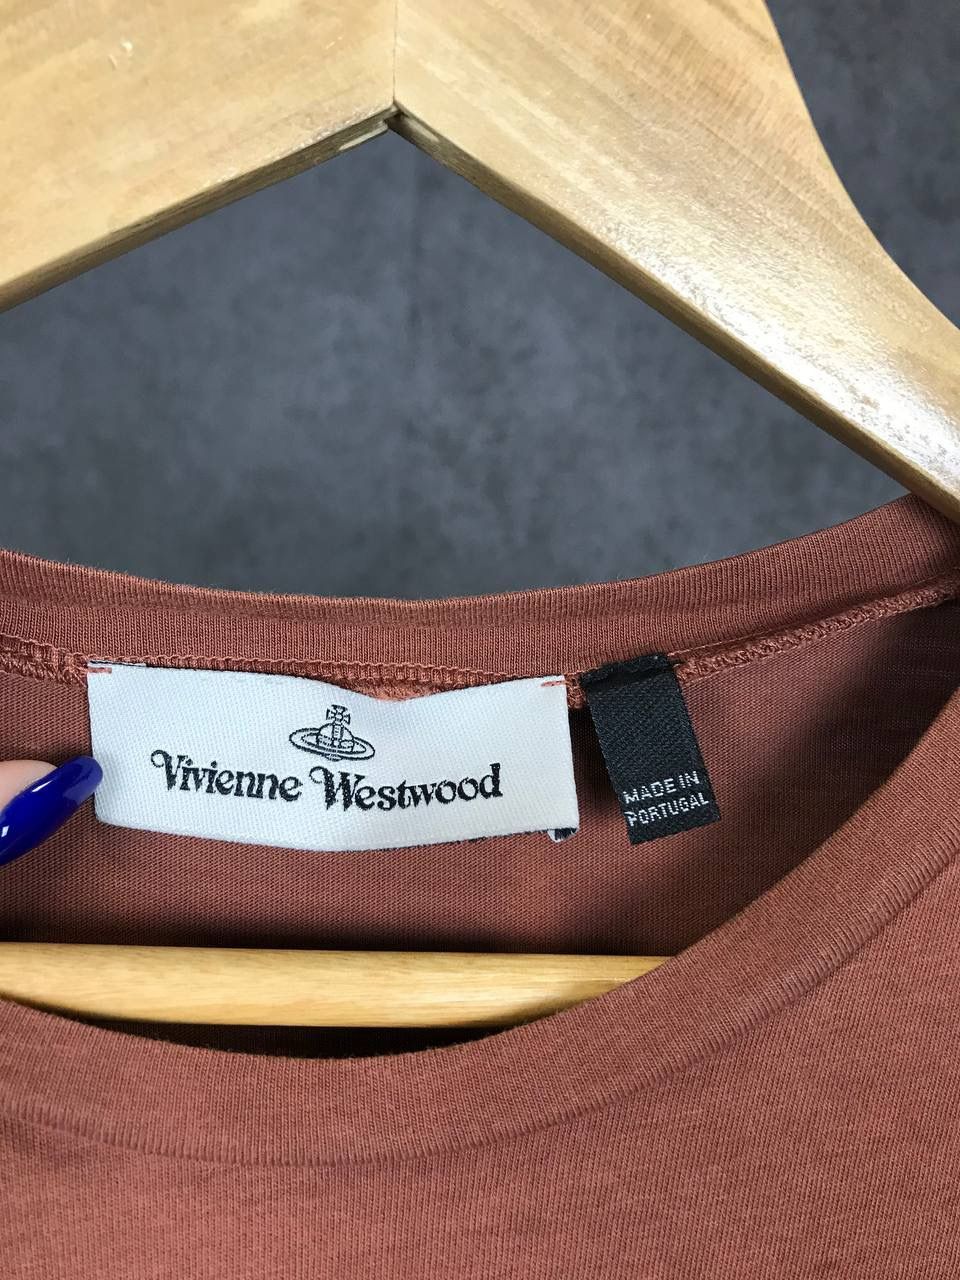 Vivienne Westwood Vivienne Westwood luxury streetwear tee Size US XL / EU 56 / 4 - 3 Thumbnail